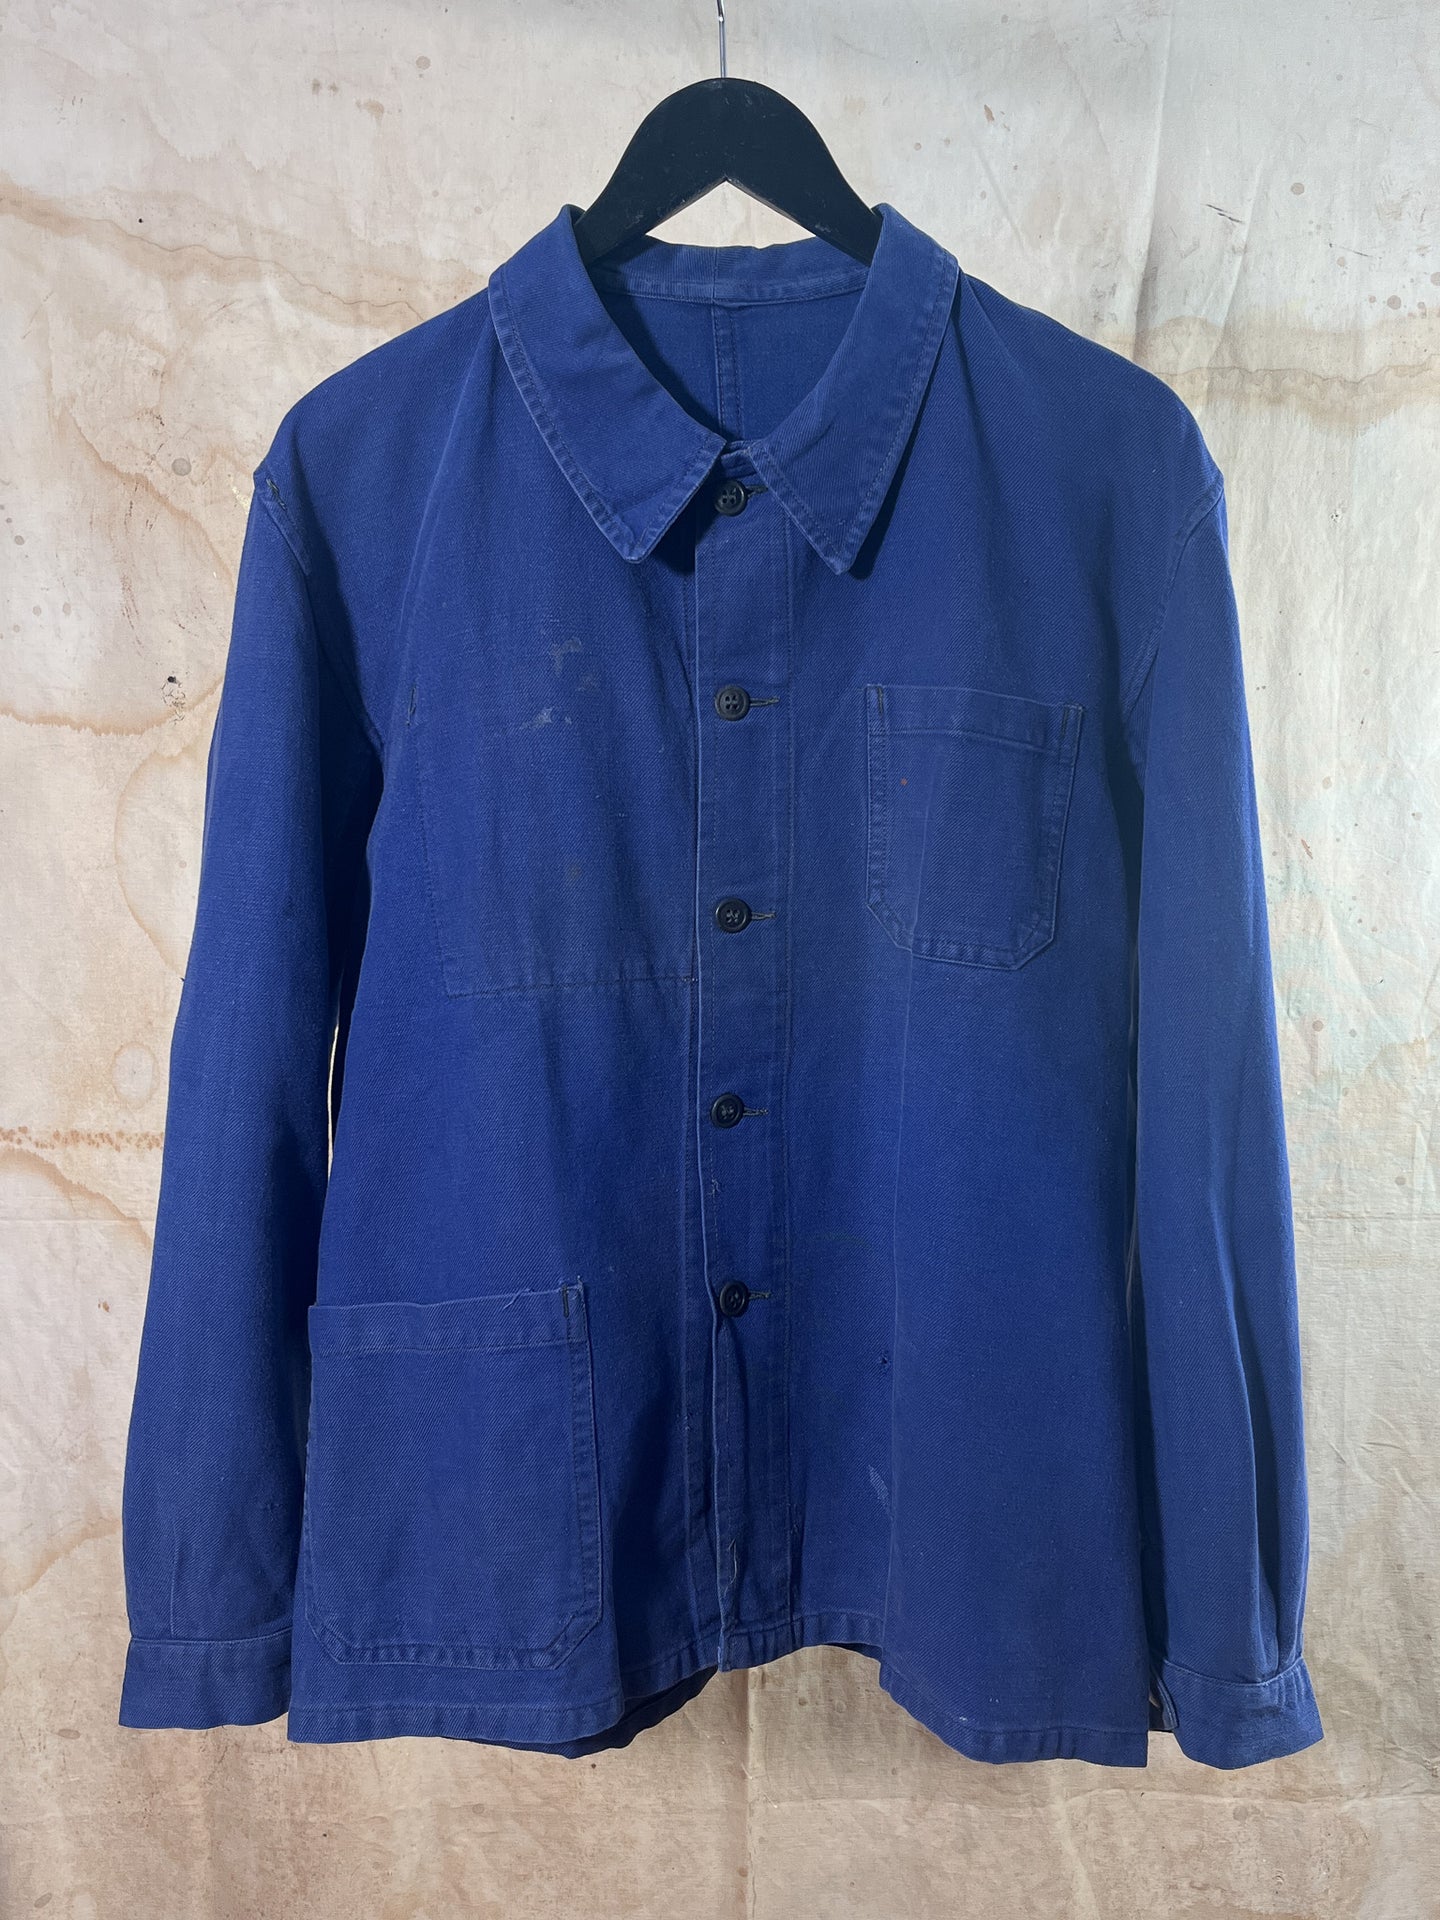 French Cotton Twill Work Jacket - Le Vetement Parfait c. 1950s